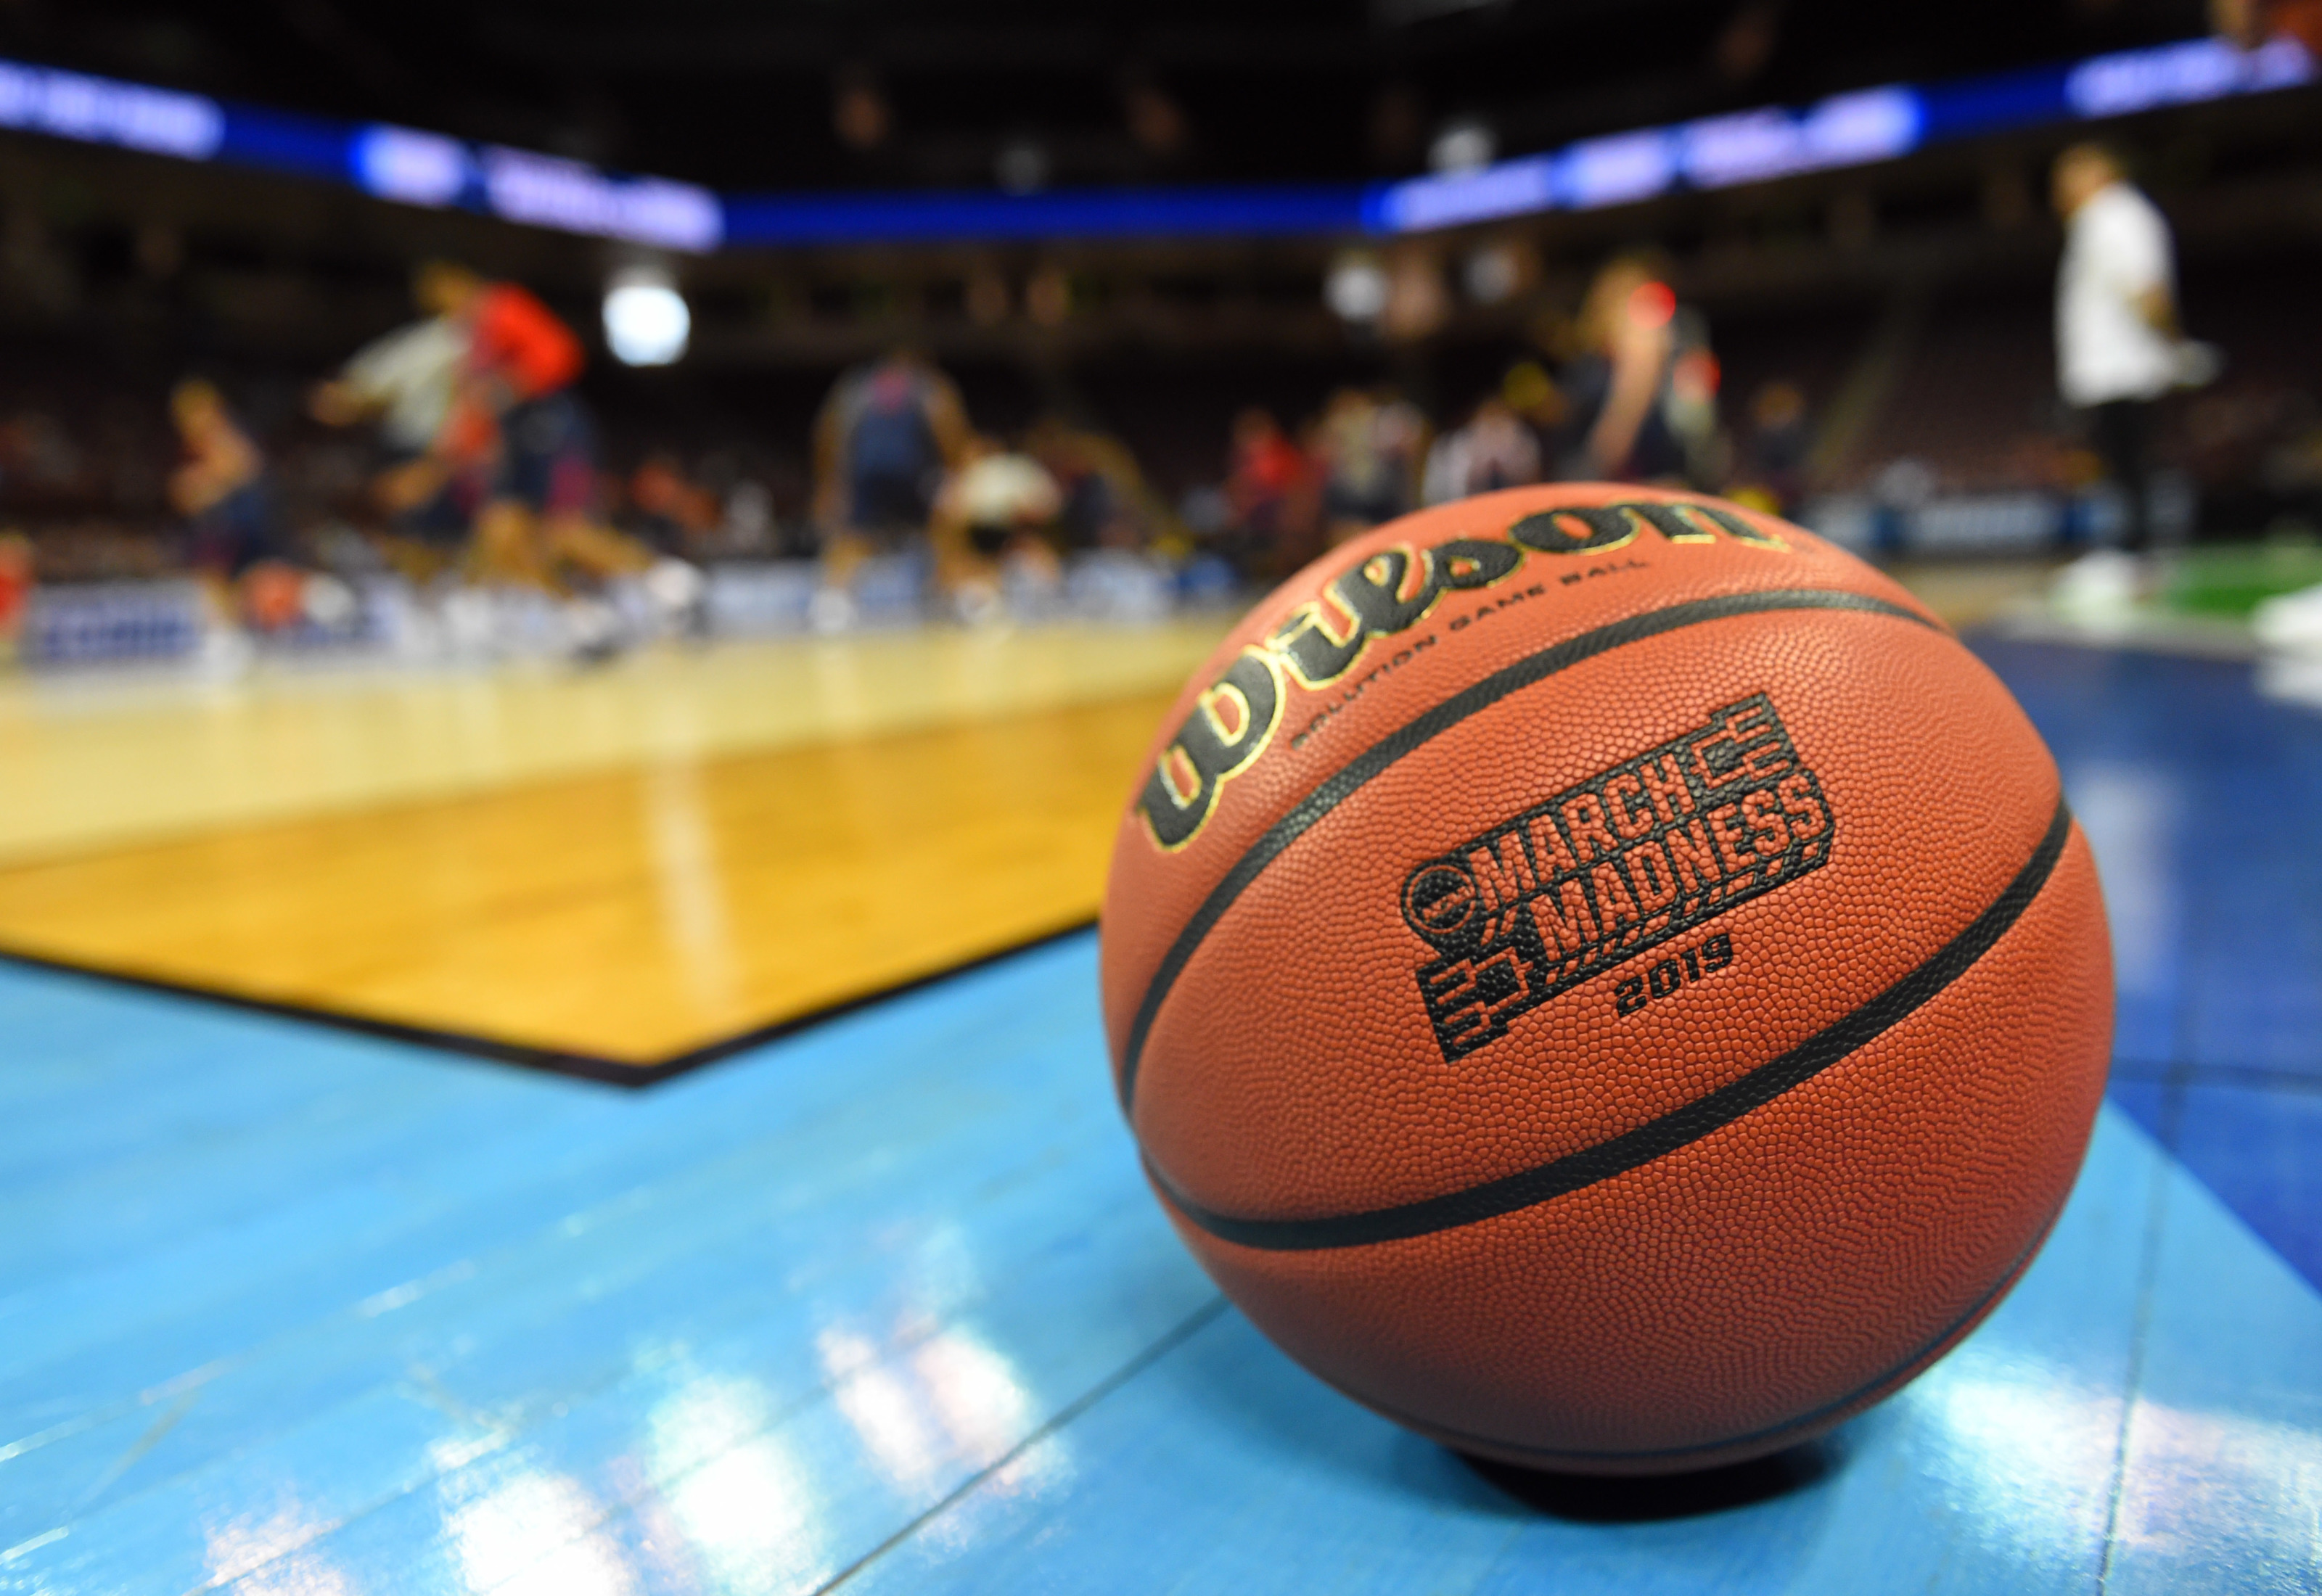 NCAA Tournament Bracket Watch: Alabama is a No. 1 seed